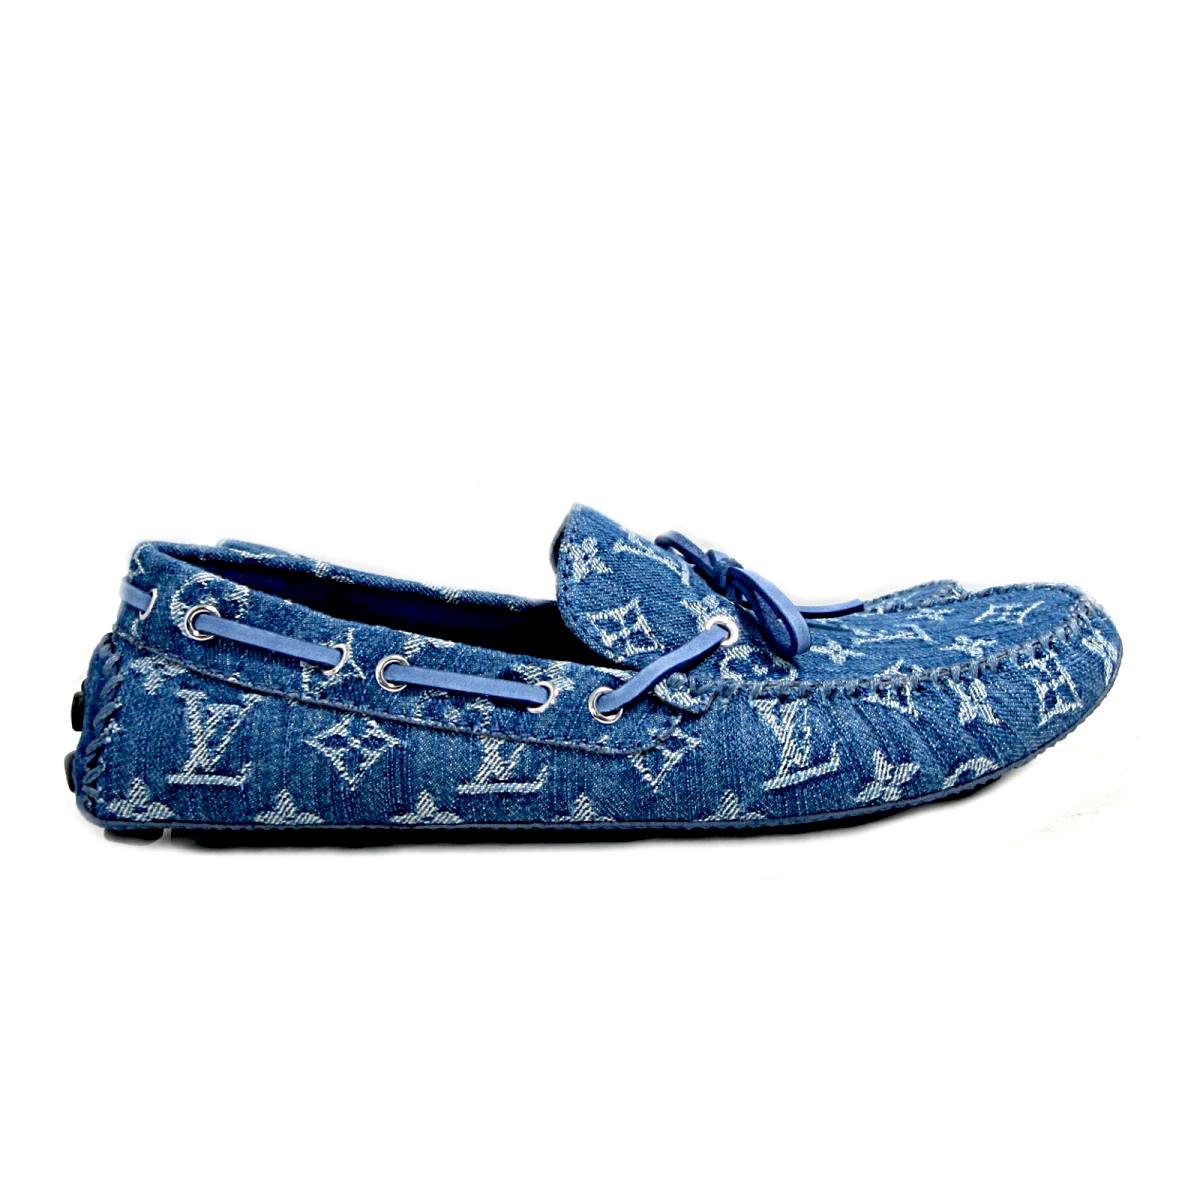 blue louis vuitton shoe